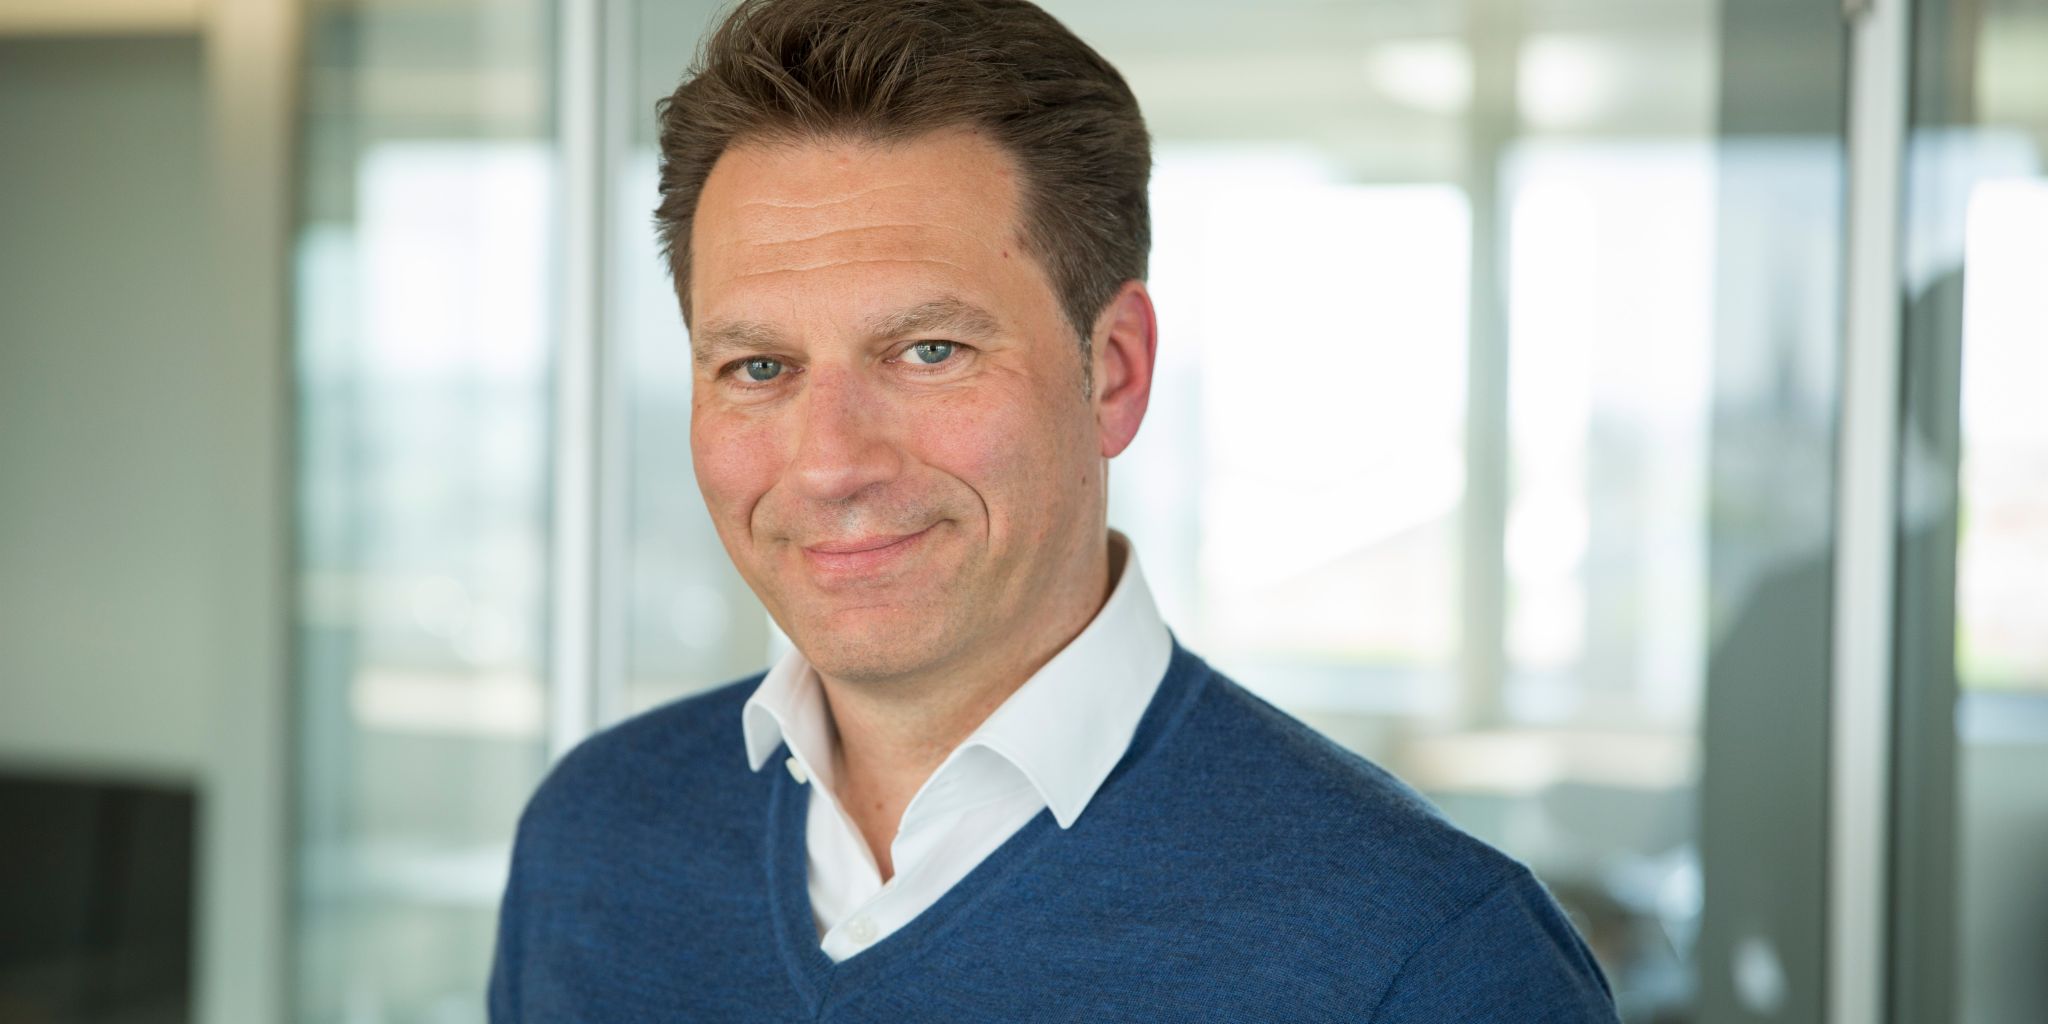 Vordenker: CEO Klaus Engberding gibt der EOS Gruppe eine neue Richtung